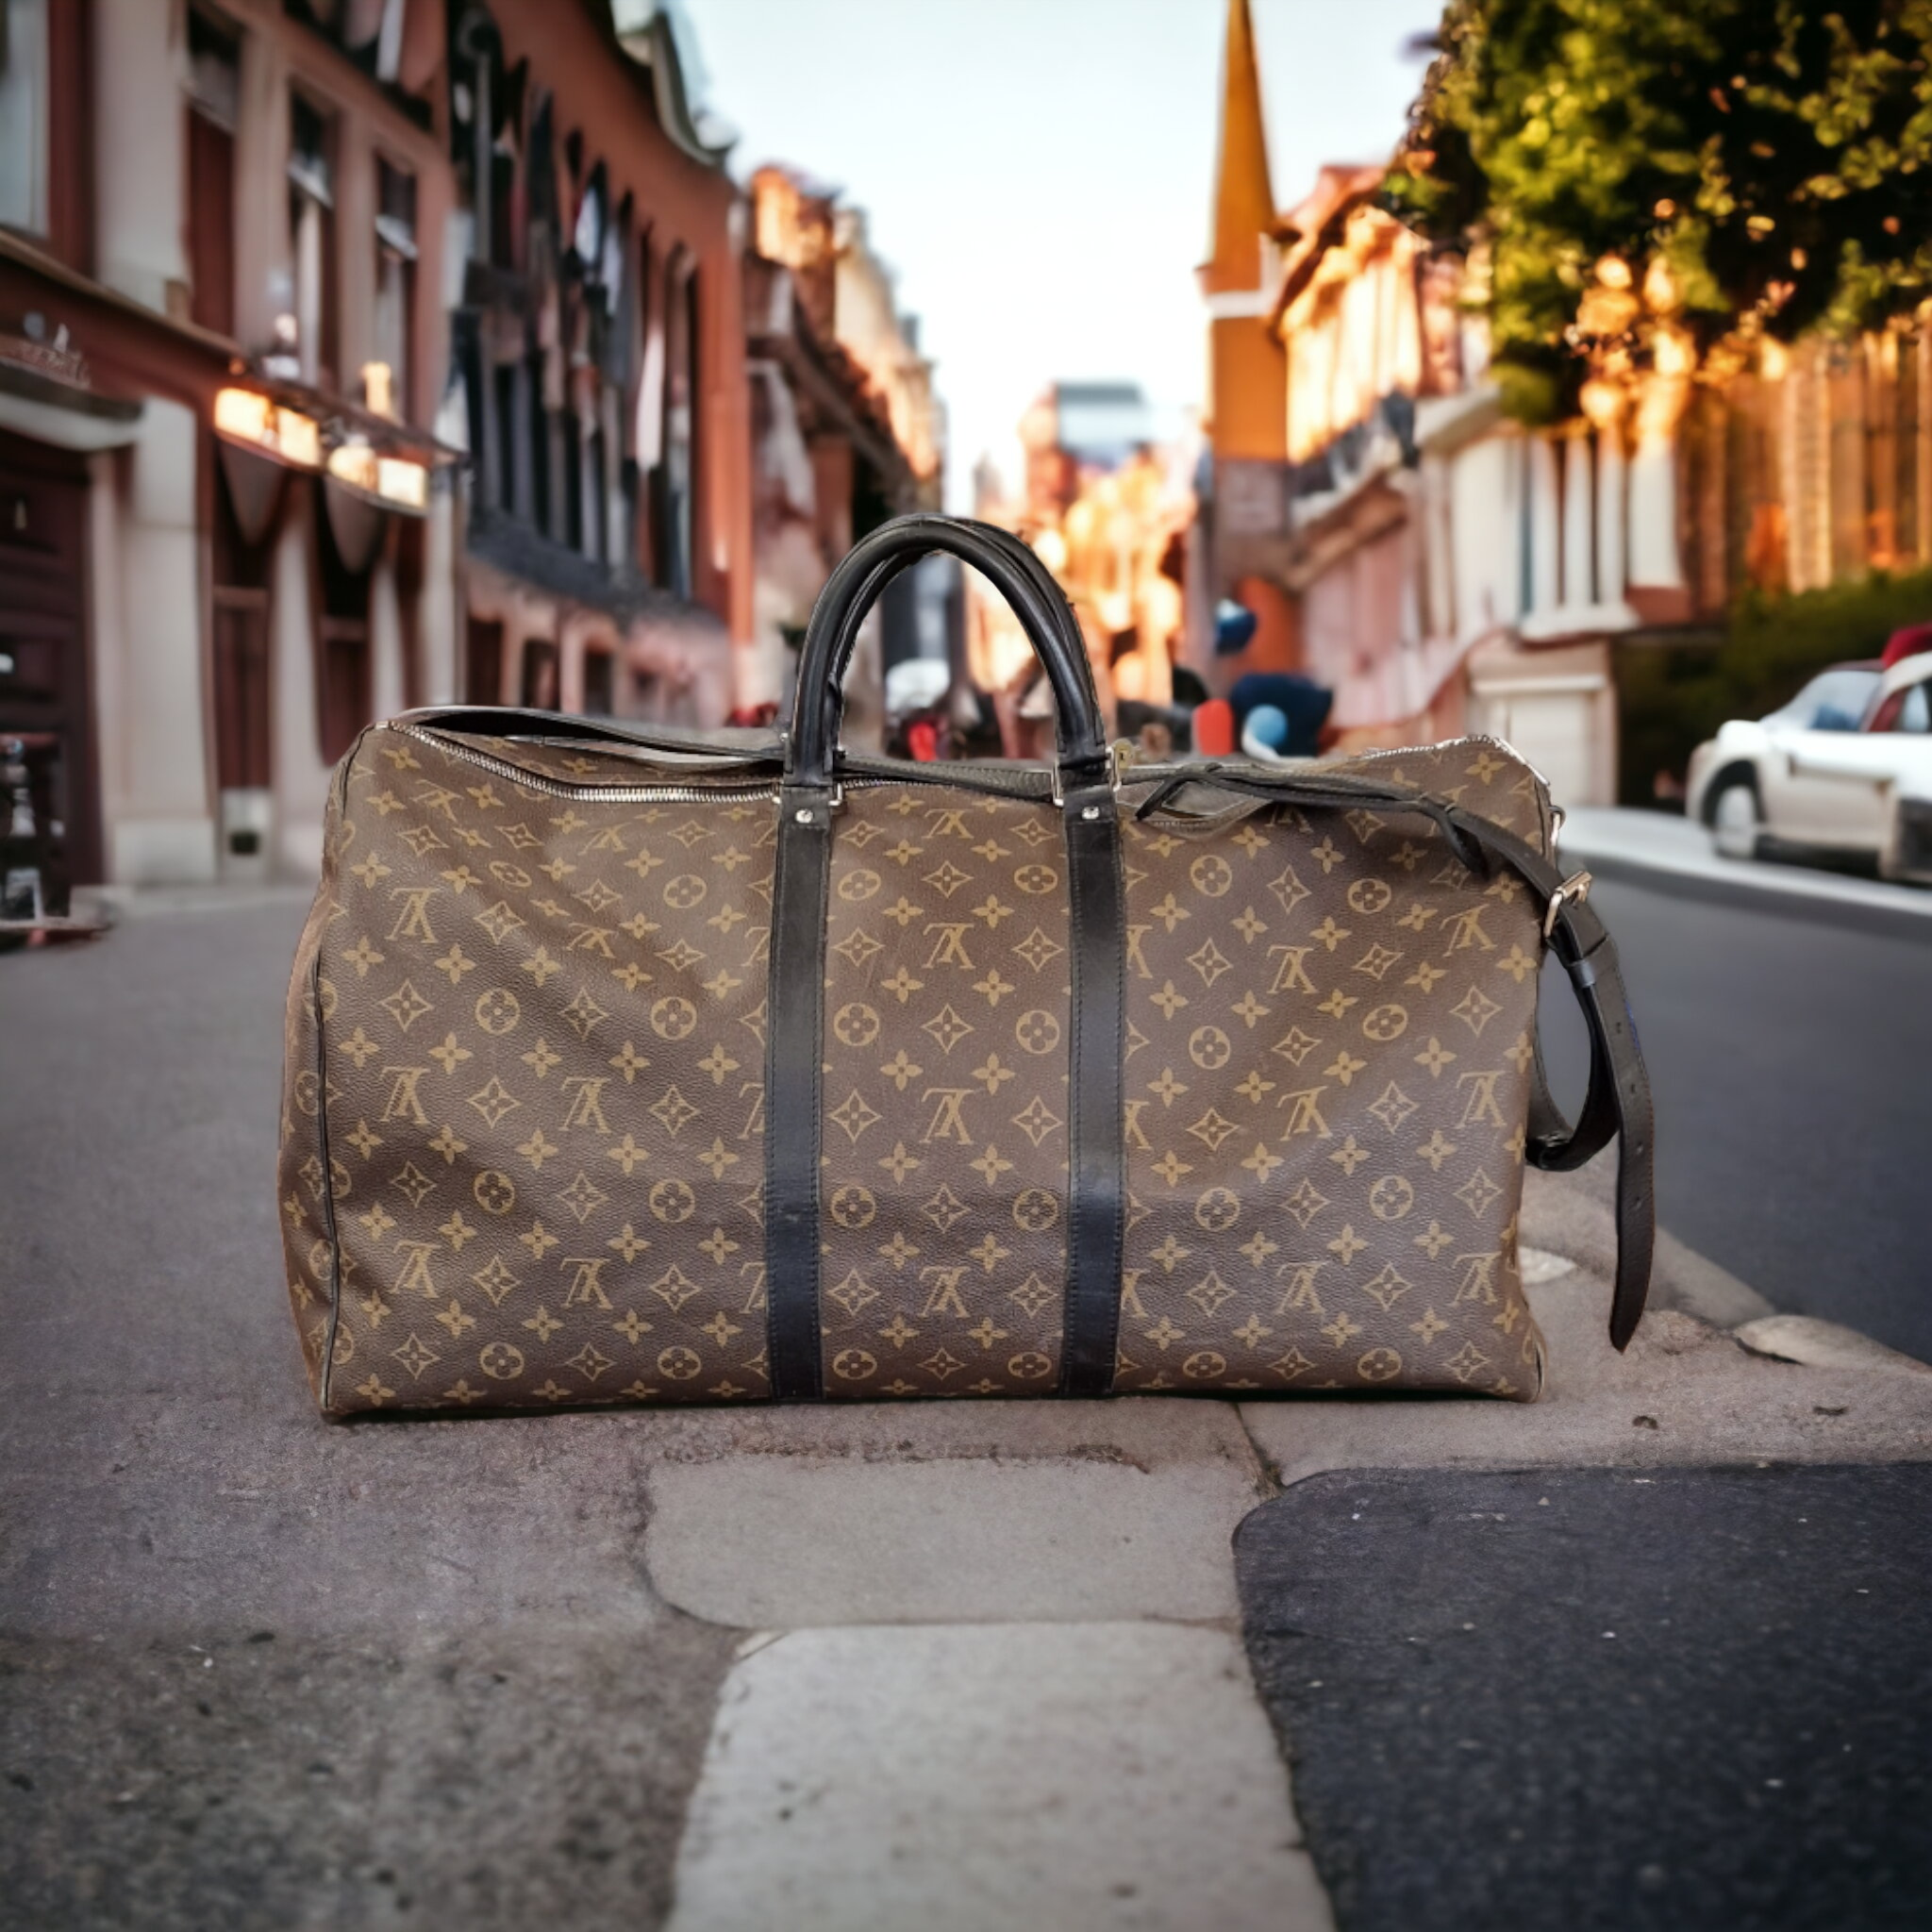 Louis Vuitton Monogram Macassar Keepall Bandoulière 45 Handbag